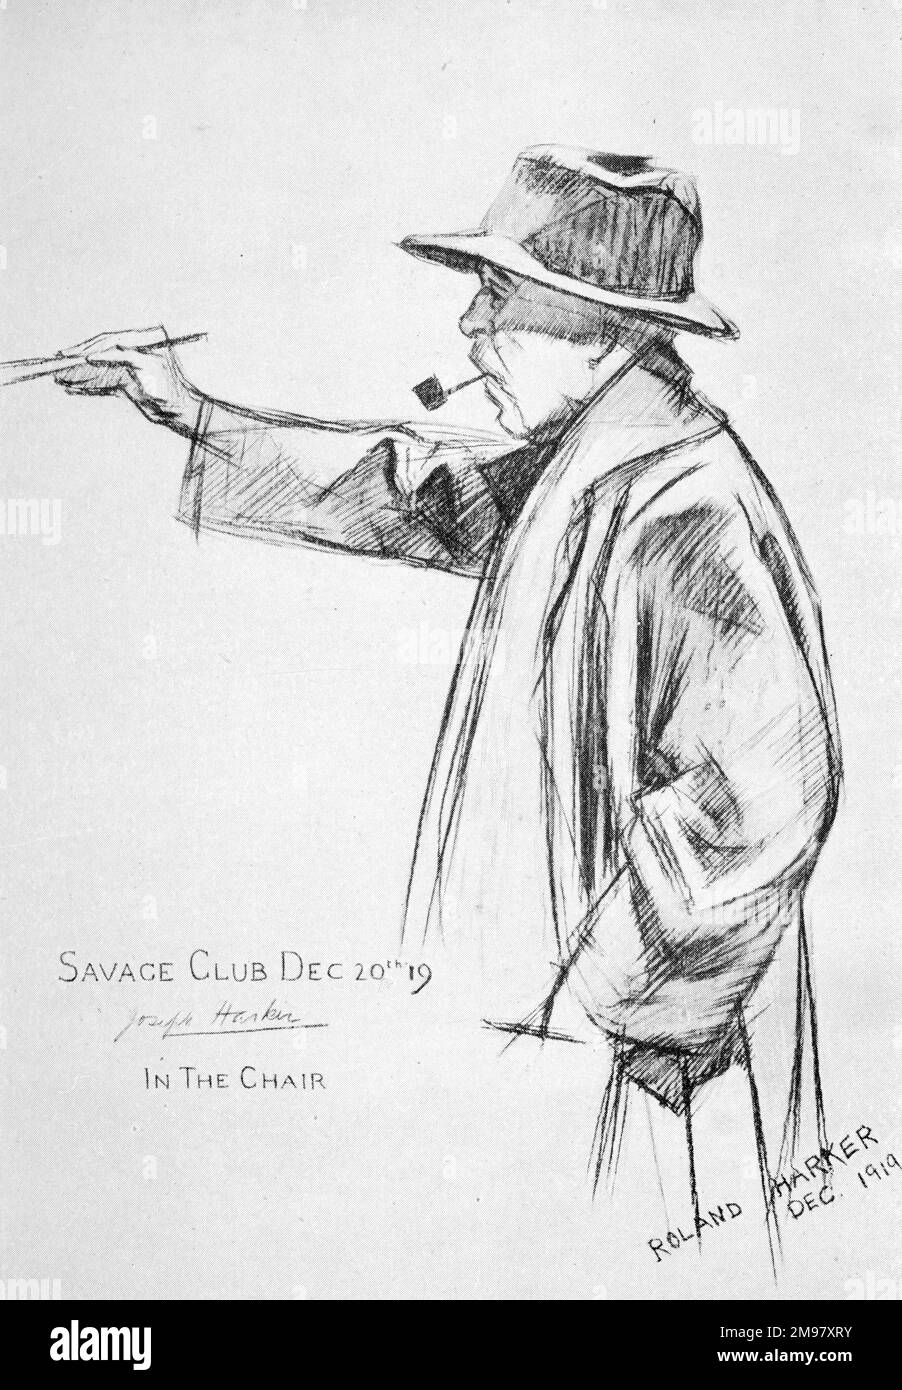 Joseph Cunningham Harker (1855-1927), ein Künstler aus der szenischen Theaterwelt, dargestellt auf einer Zeichnung seines Sohnes Roland auf einer Mitteilung des Savage Clubs, wahrscheinlich zu einer Weihnachtsfeier. Stockfoto